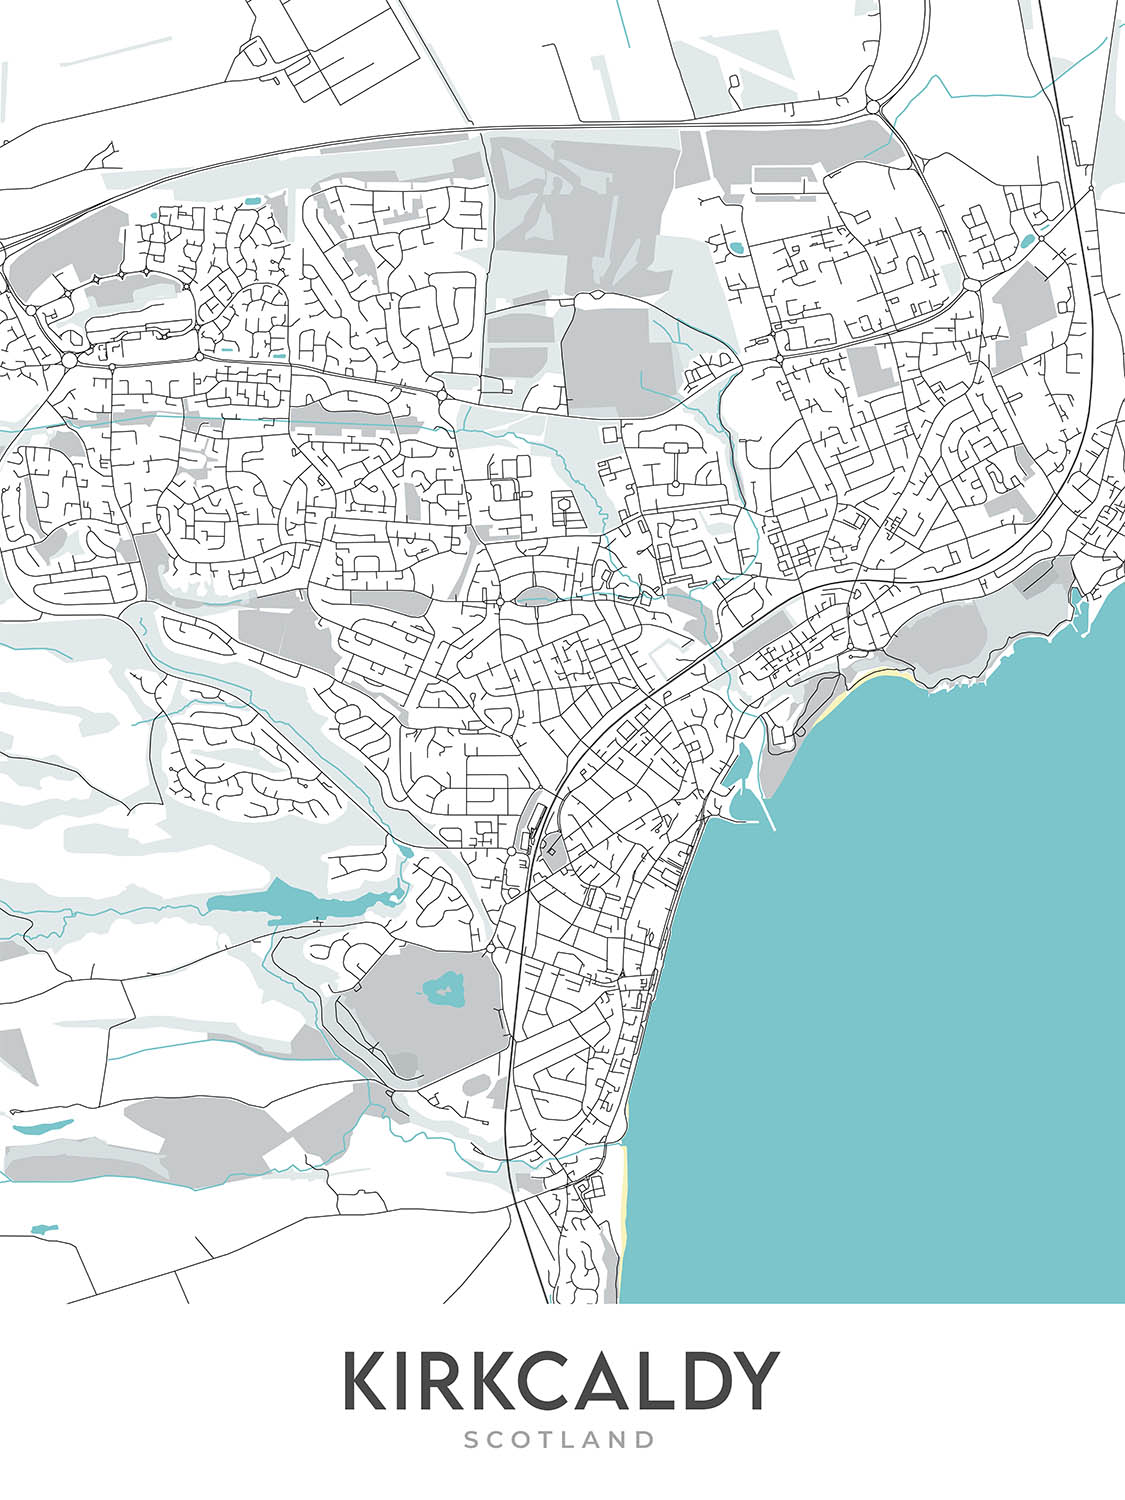 Plan de la ville moderne de Kirkcaldy, Écosse : château de Ravenscraig, parc Beveridge, A921, Pathhead, Harbour